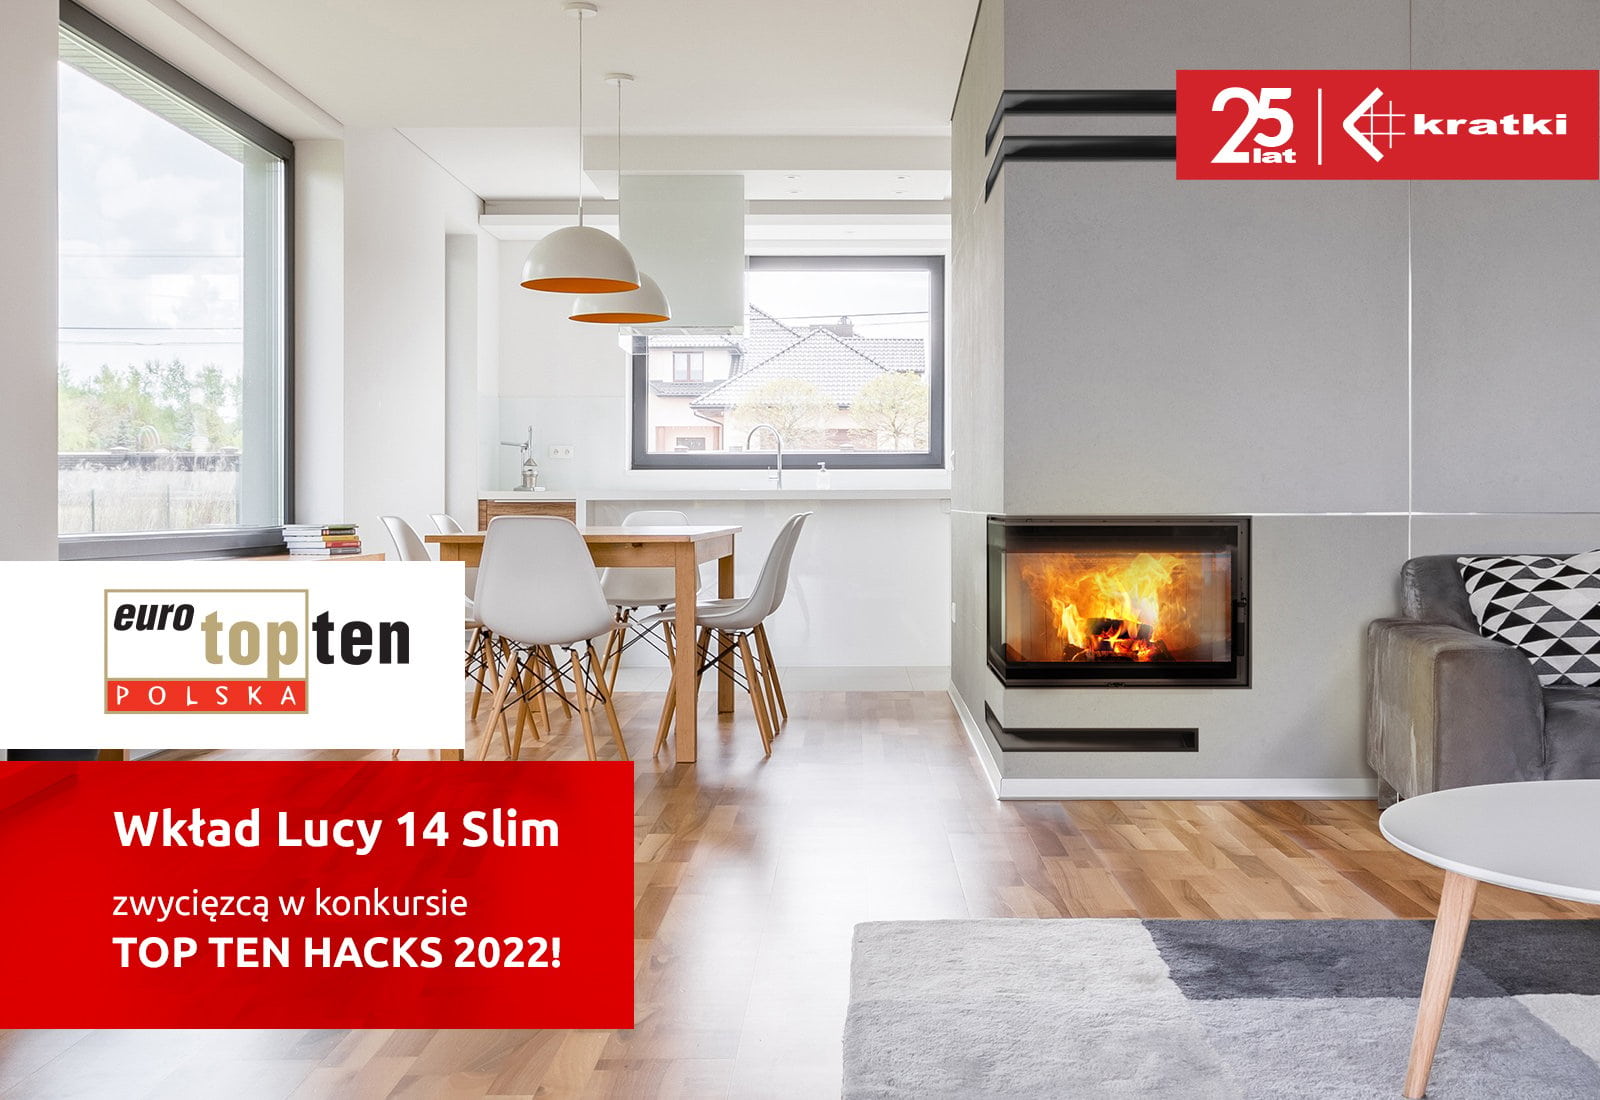 Wkład Lucy 14 Slim zwycięzcą w konkursie TOP TEN HACKS 2022!